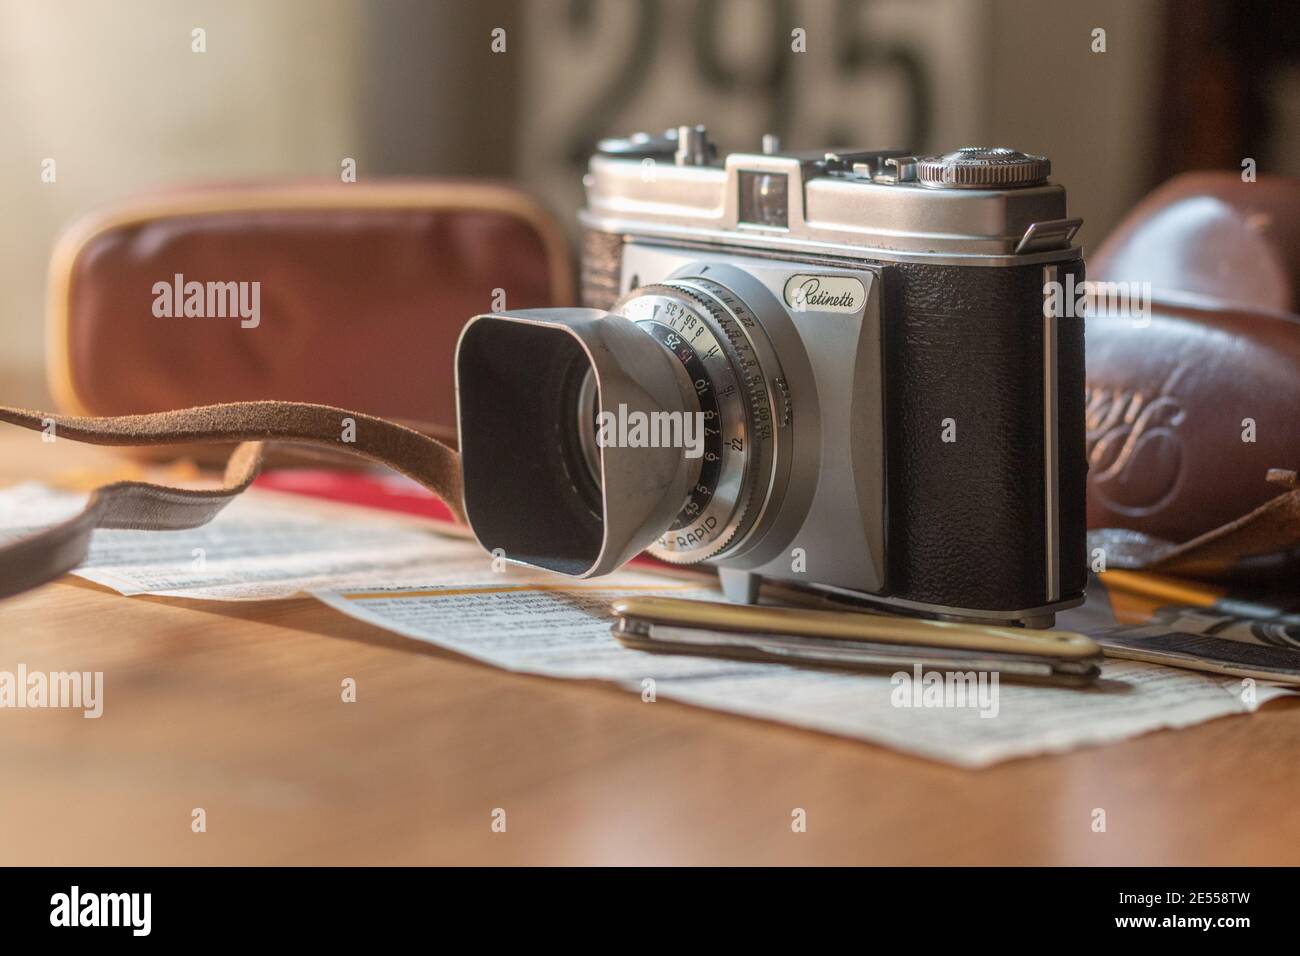 Dies ist ein Foto einer Kodak Retinette, Vintage-Filmkamera. Dieses Bild wurde mit einer Canon 70D und einem 50mm f/1.4 aufgenommen. Stockfoto